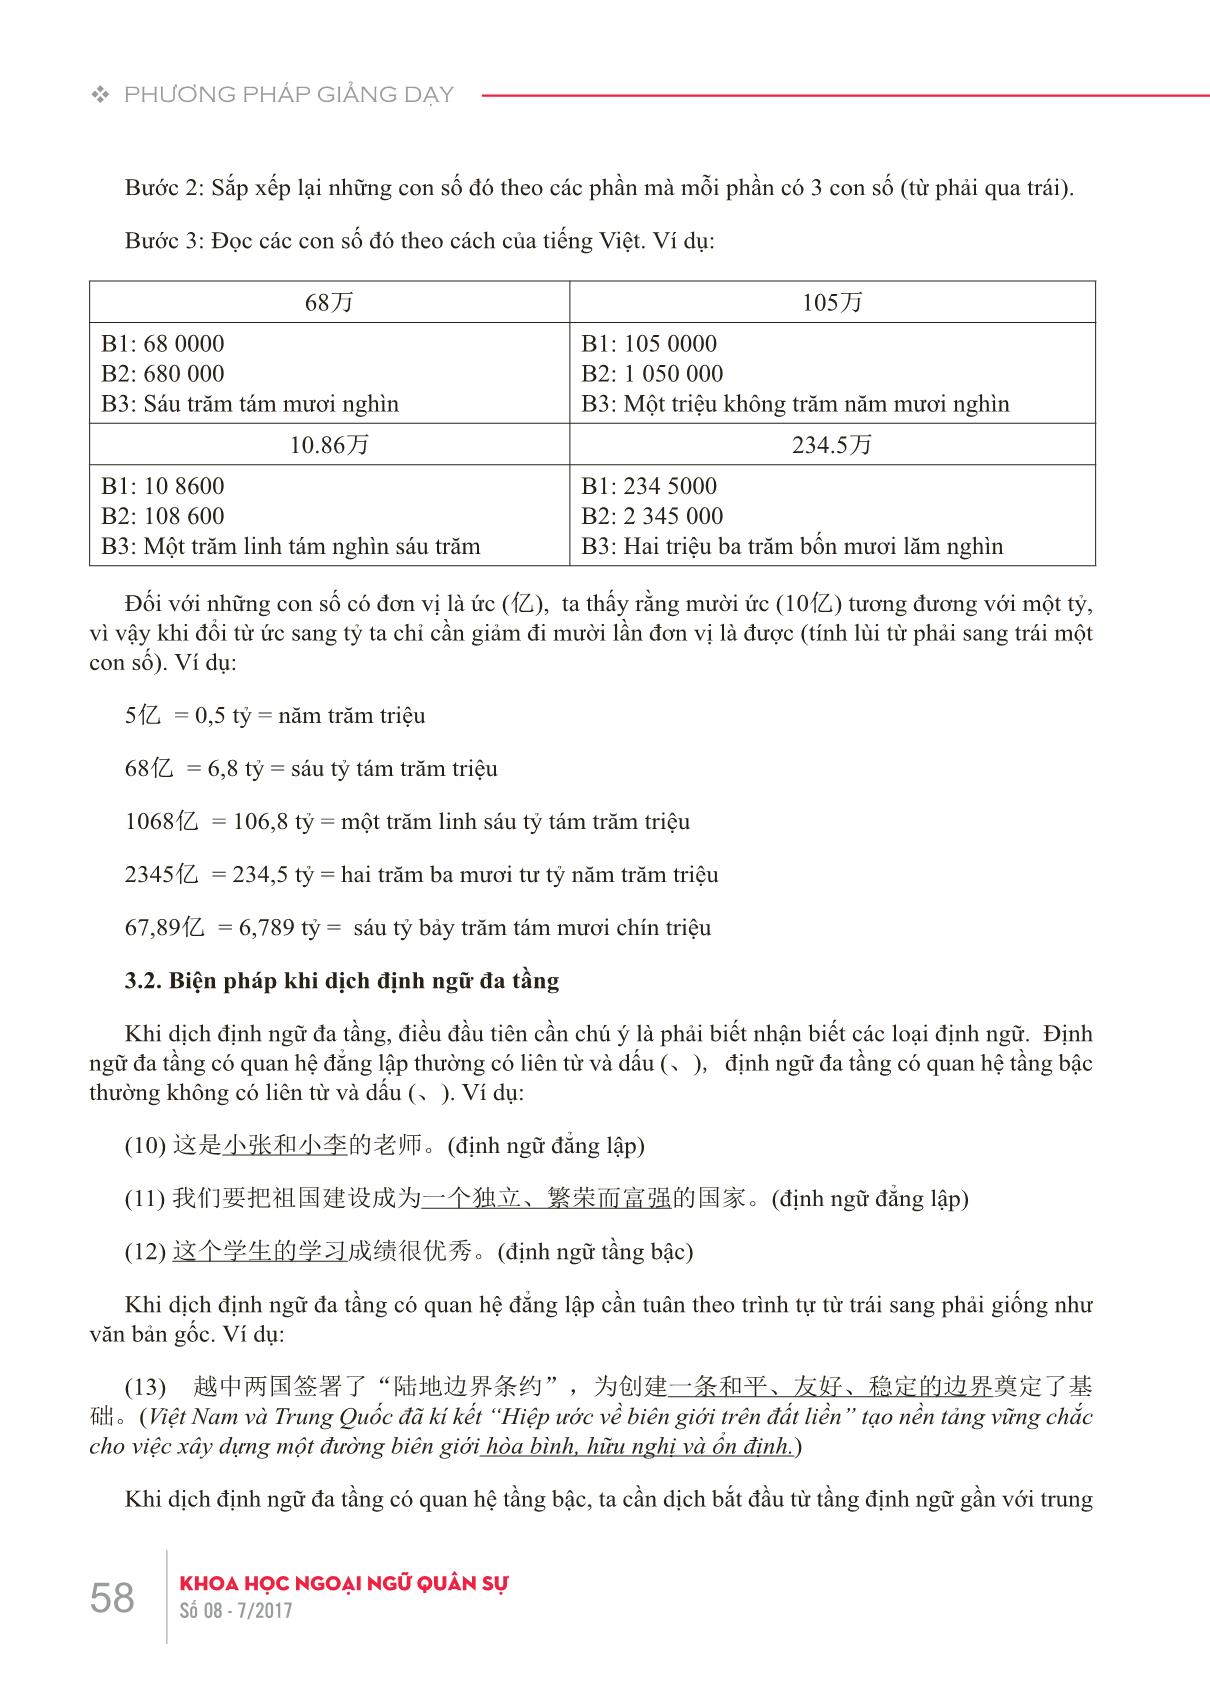 Những lỗi sai thường gặp của sinh viên khi dịch viết Hán-Việt do hạn chế về kiến thức ngôn ngữ và giải pháp trong giảng dạy trang 5